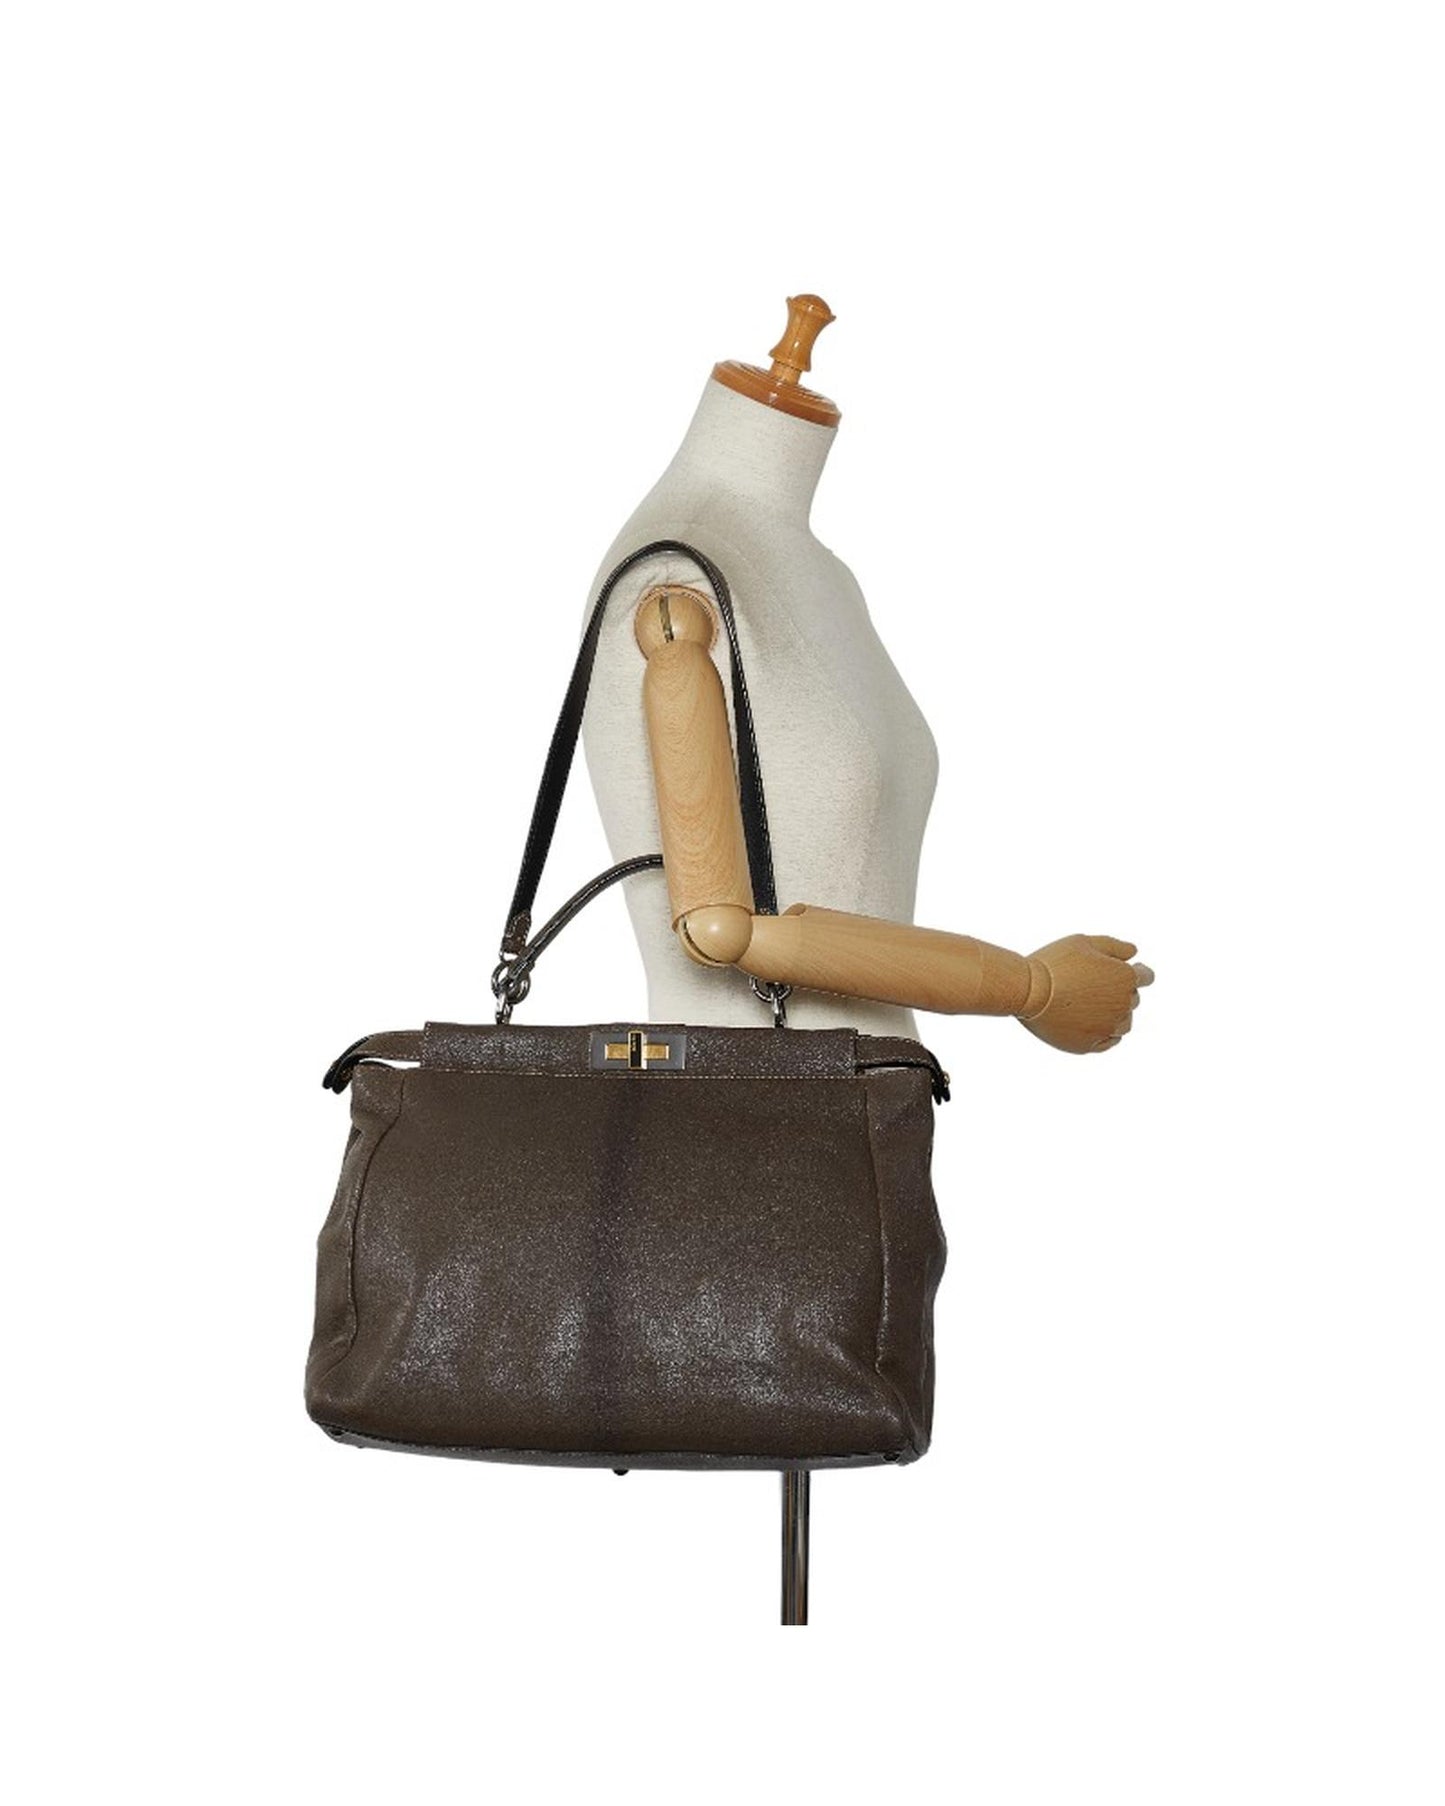 Fendi Women's Leather Peekaboo Bag in Brown